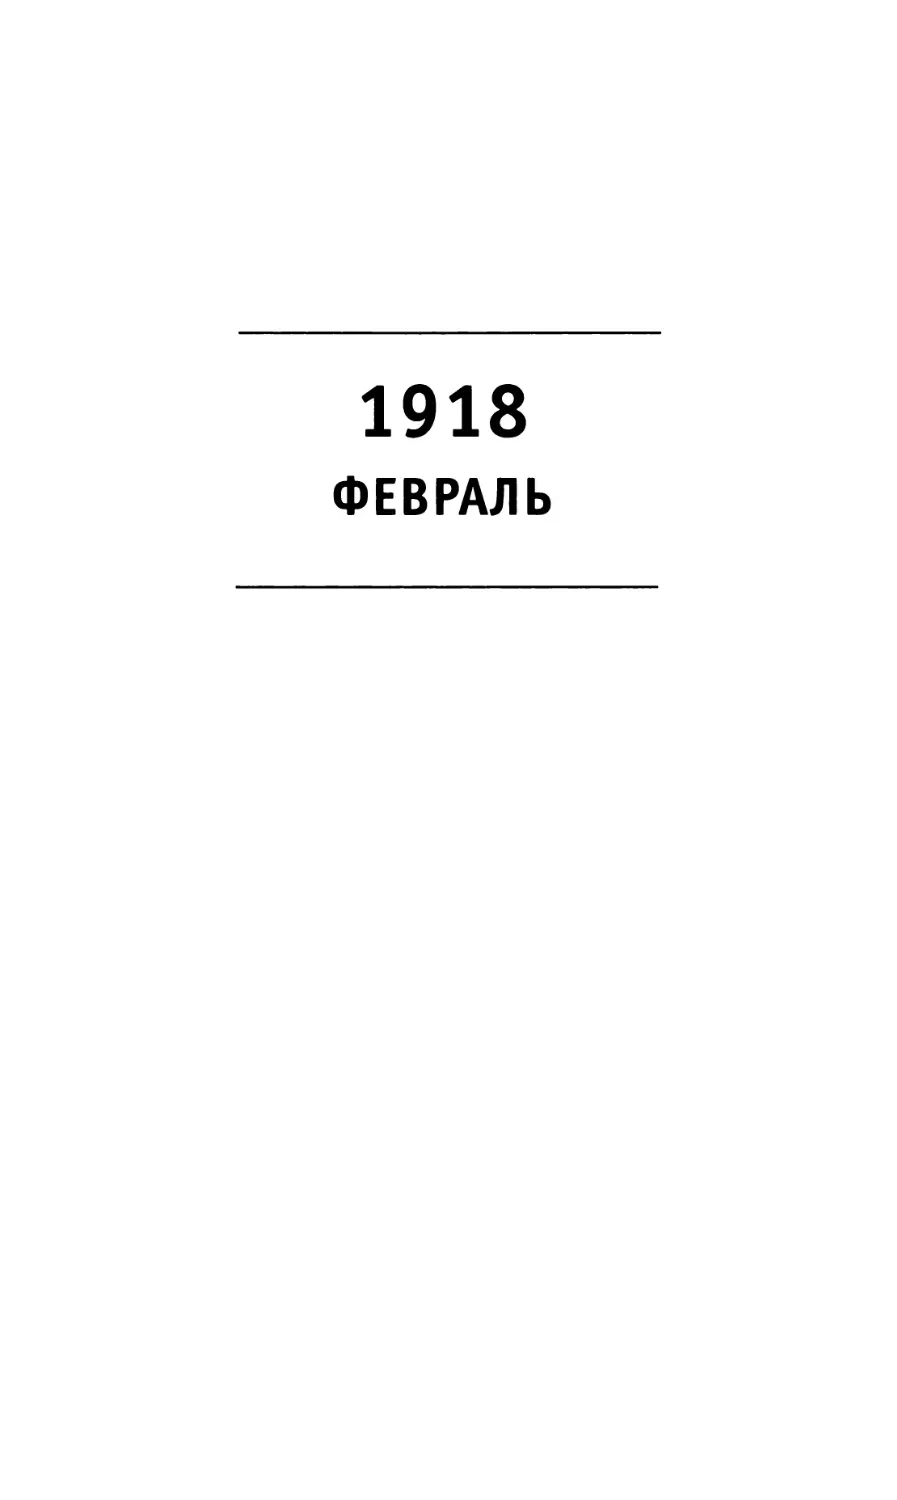 1918 Февраль